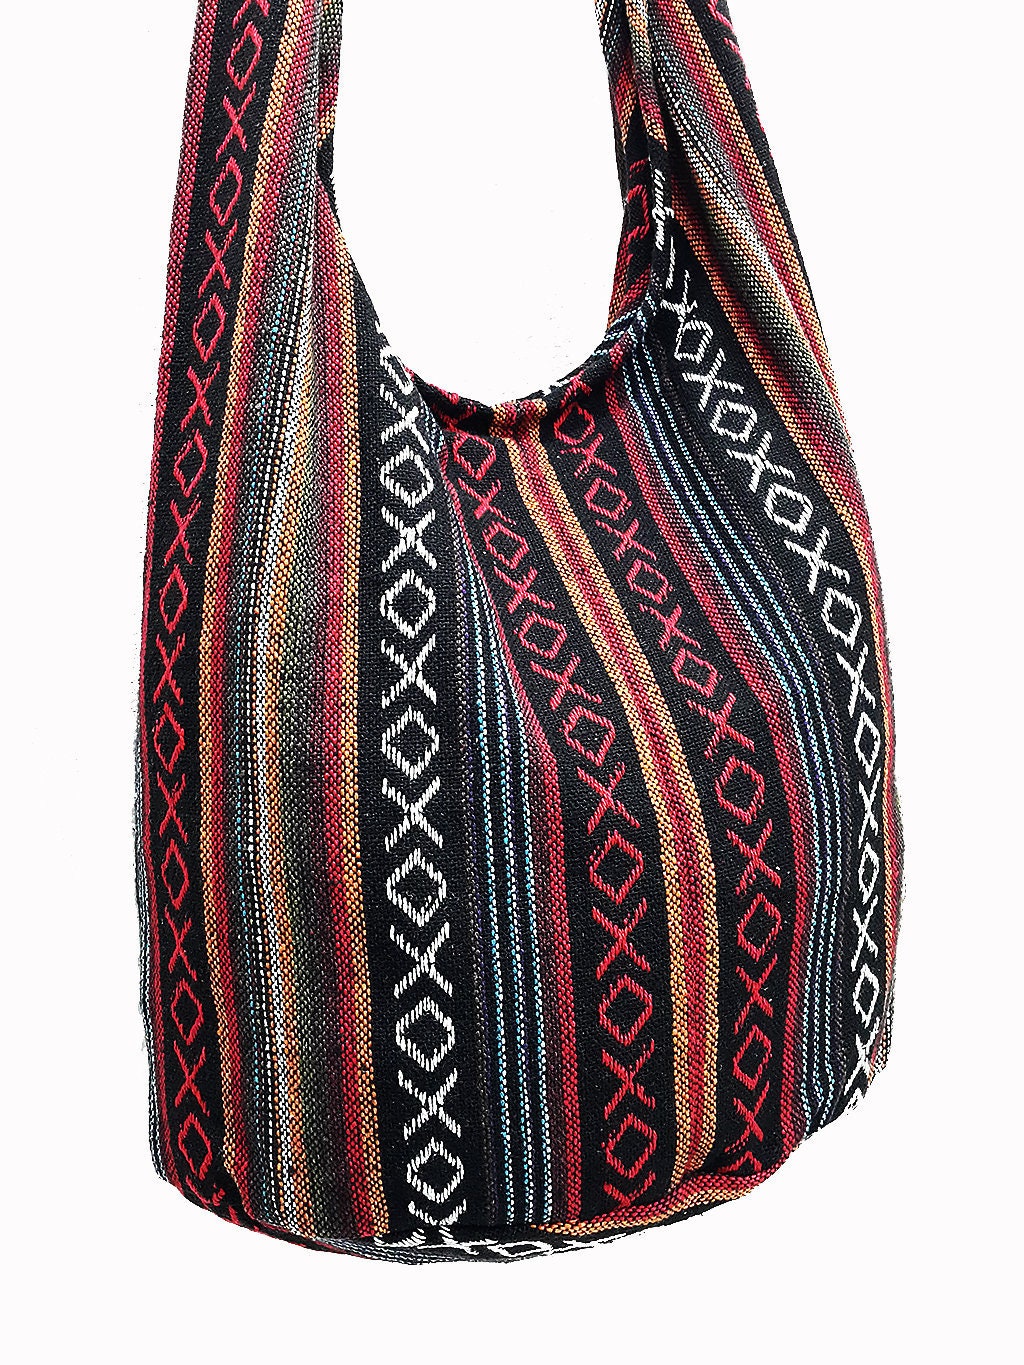 Woven Cotton Bag Hippie bag Hobo Boho bag Shoulder bag Sling | Etsy